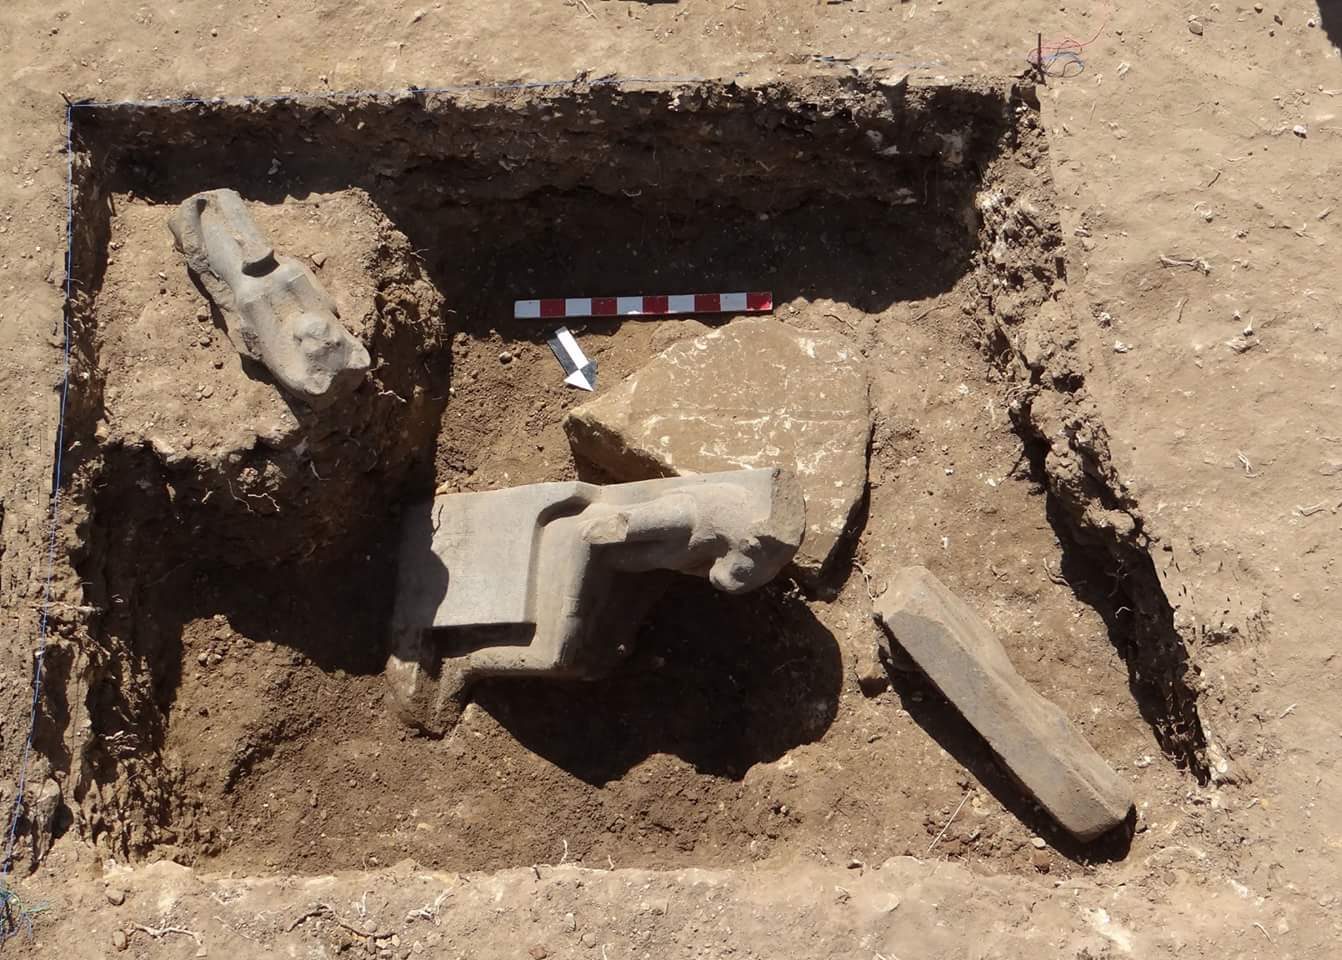   العثور على أجزاء مفقودة من "الربة القوية" فى معبد أمنحتب الثالث